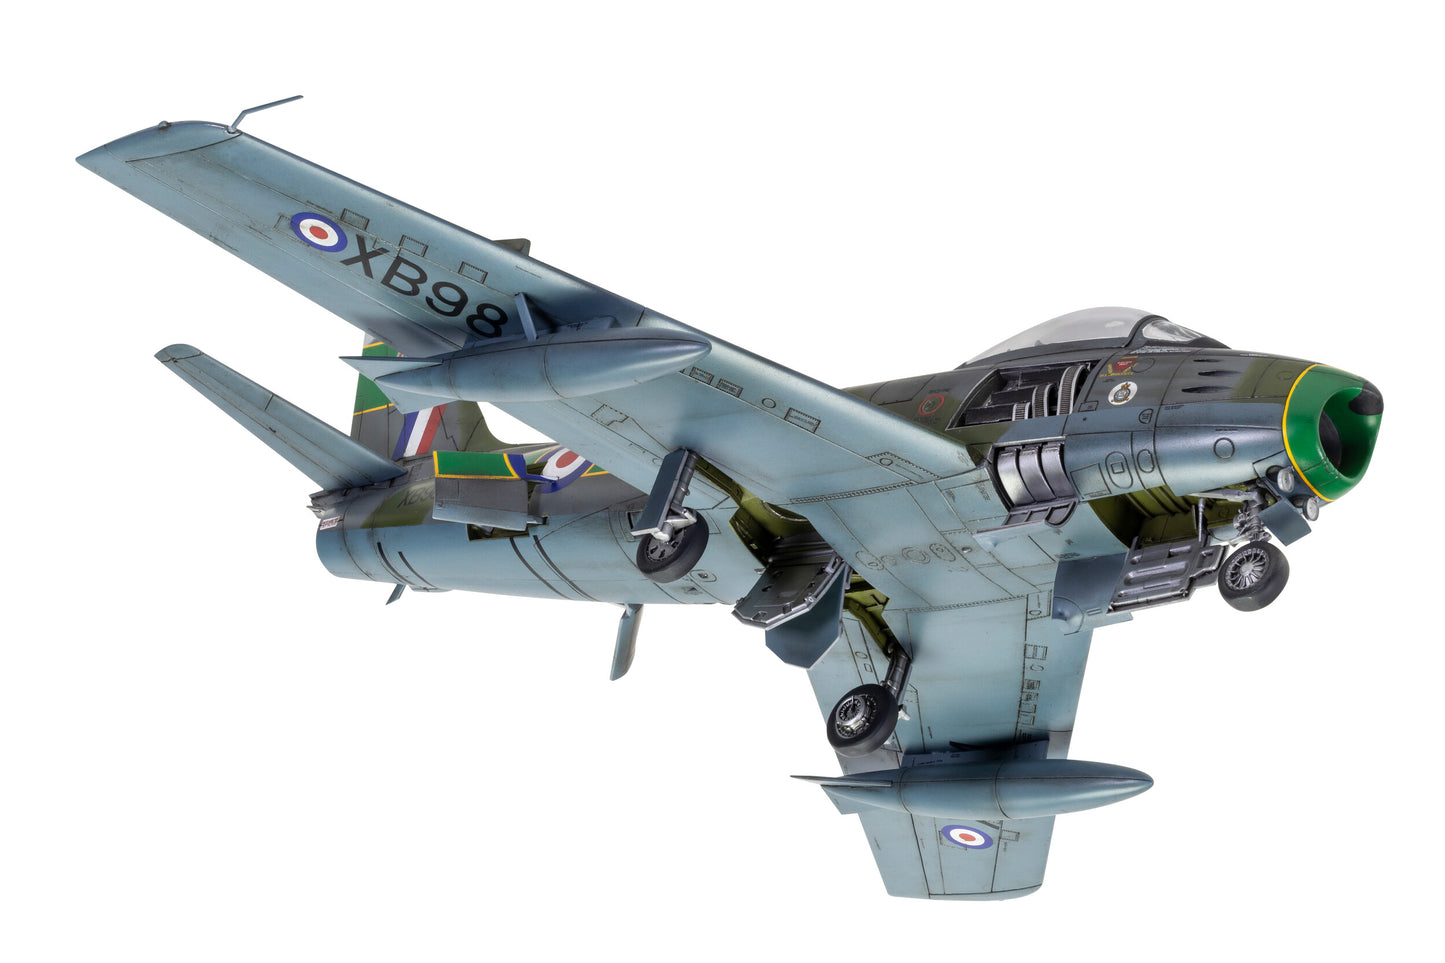 Airfix 1/48th scale Canadair Sabre F.4